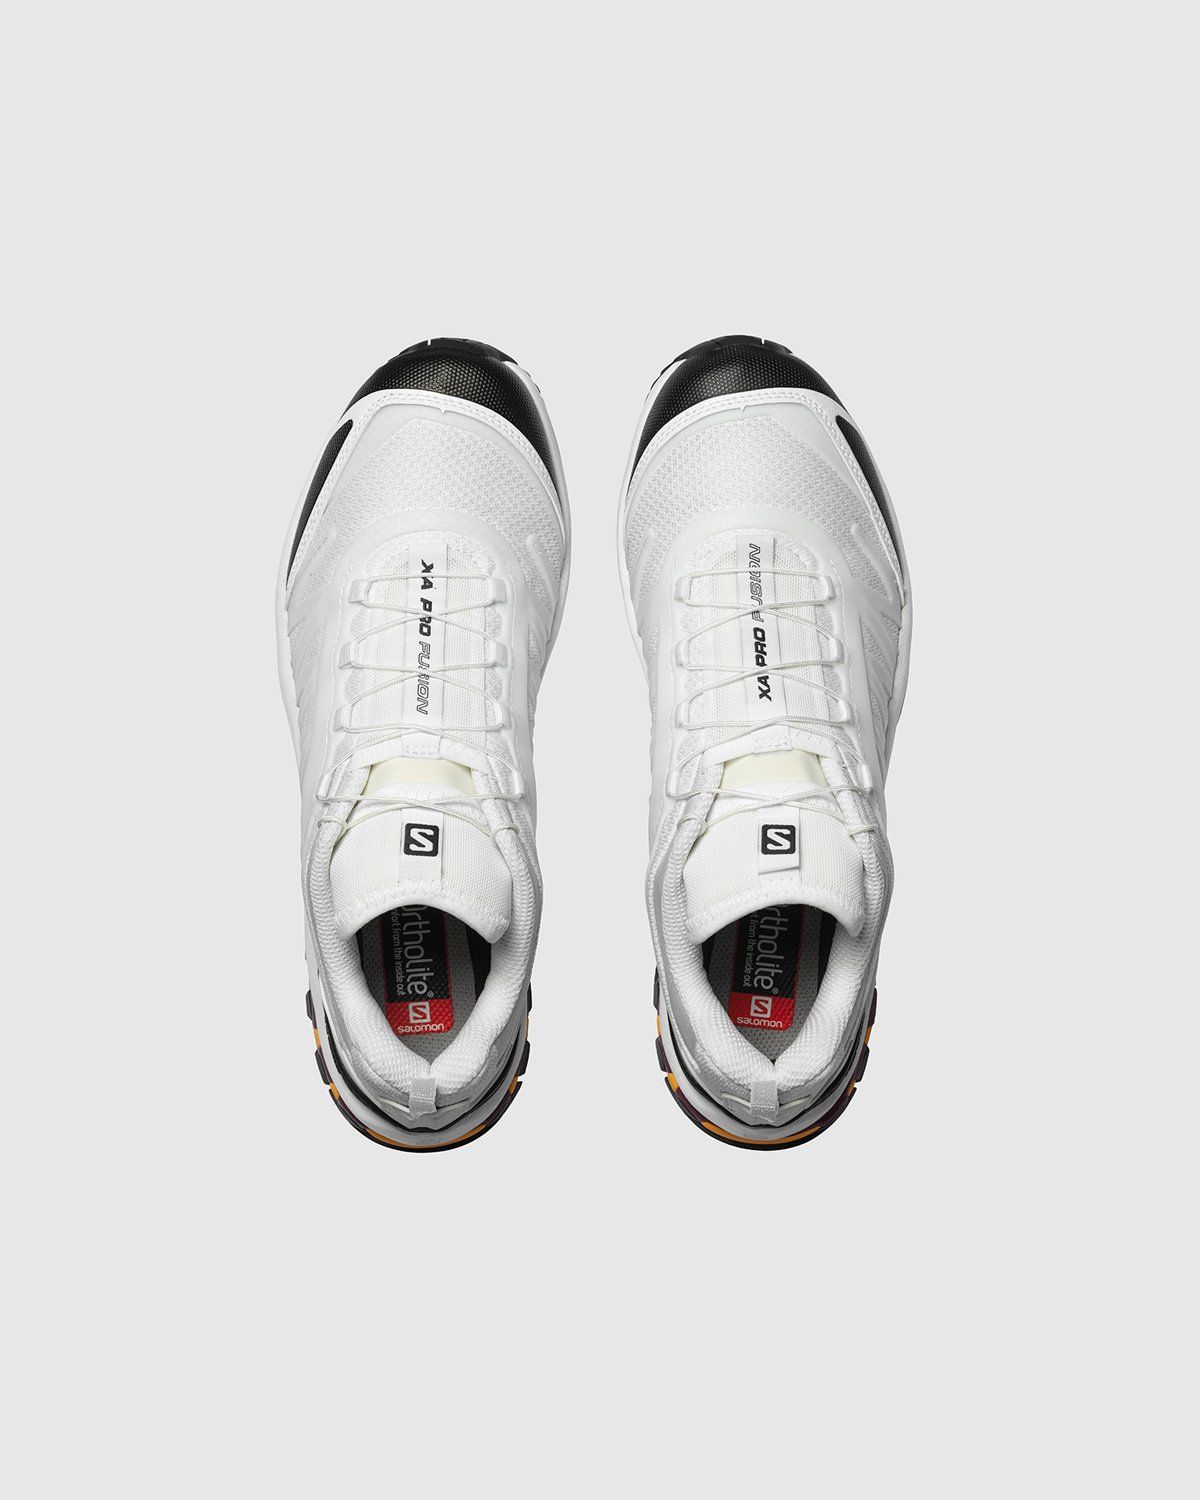 Salomon – XA-PRO FUSION ADVANCED White/Black/Plum Caspia - Sneakers - White - Image 3